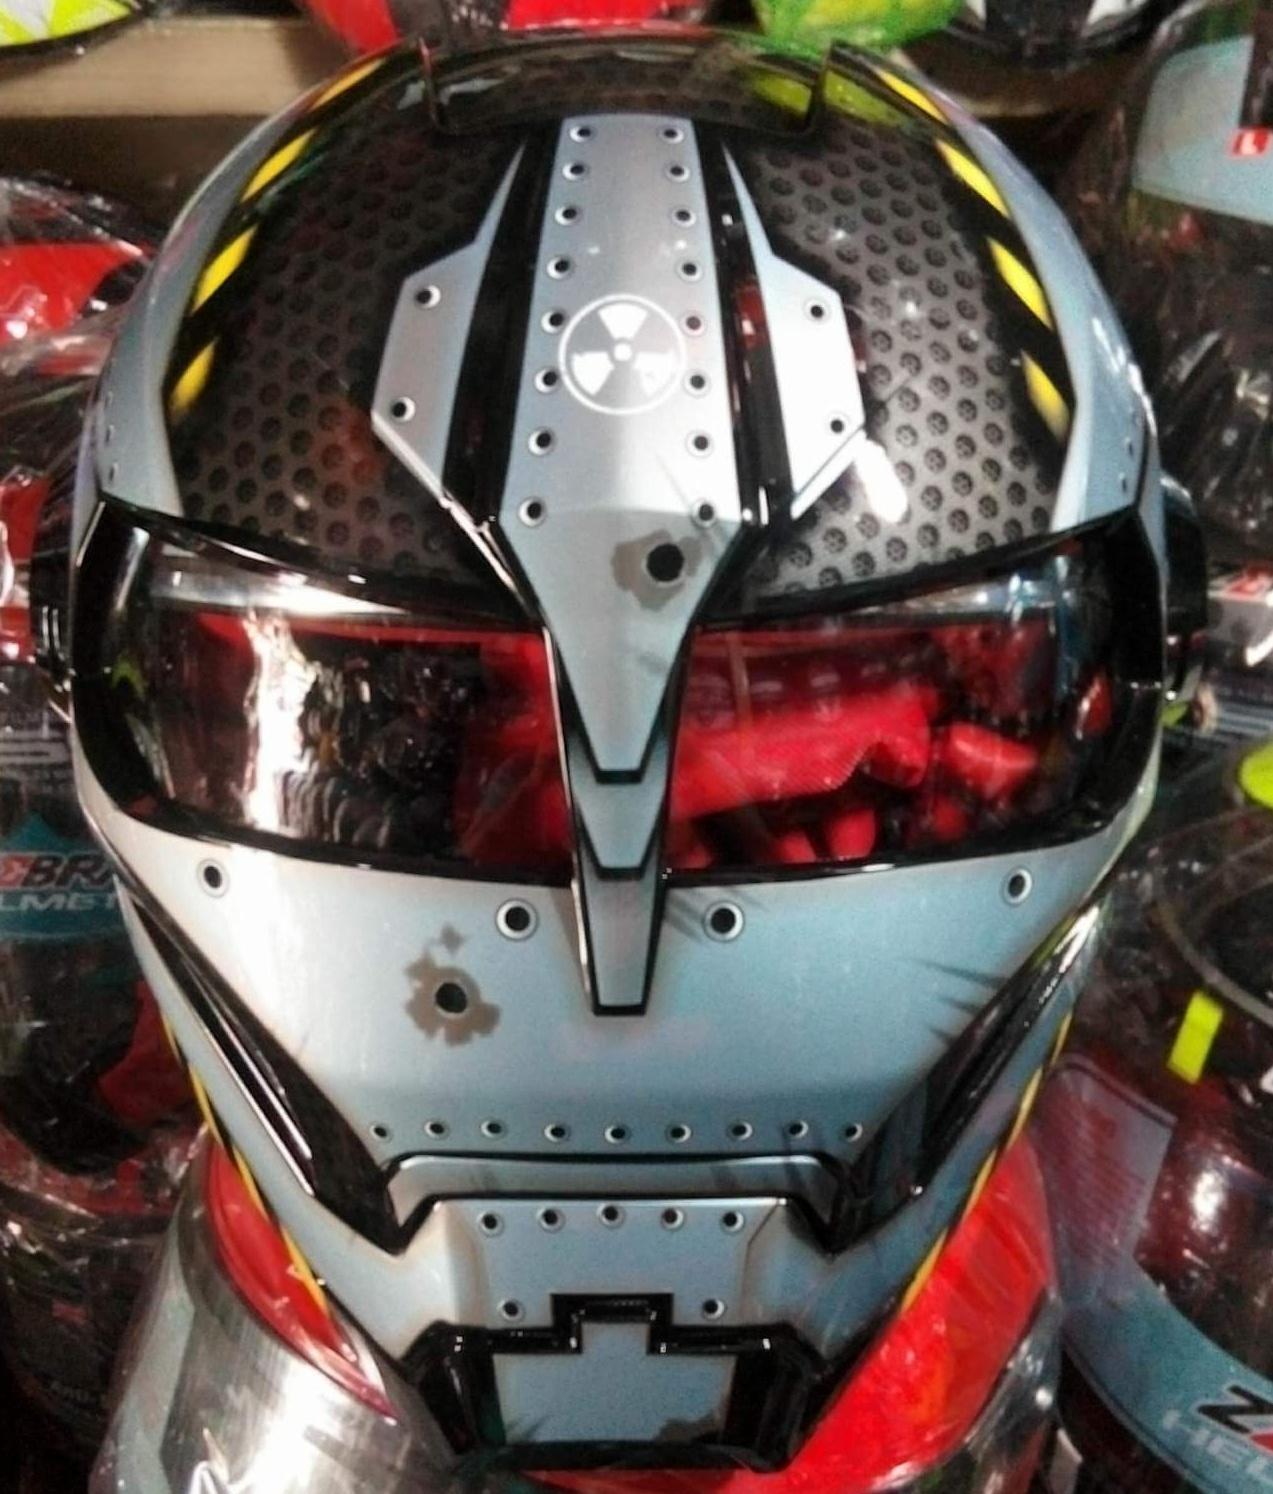 Ironman Motorcycle Helmet For Sale Philippines Queens University